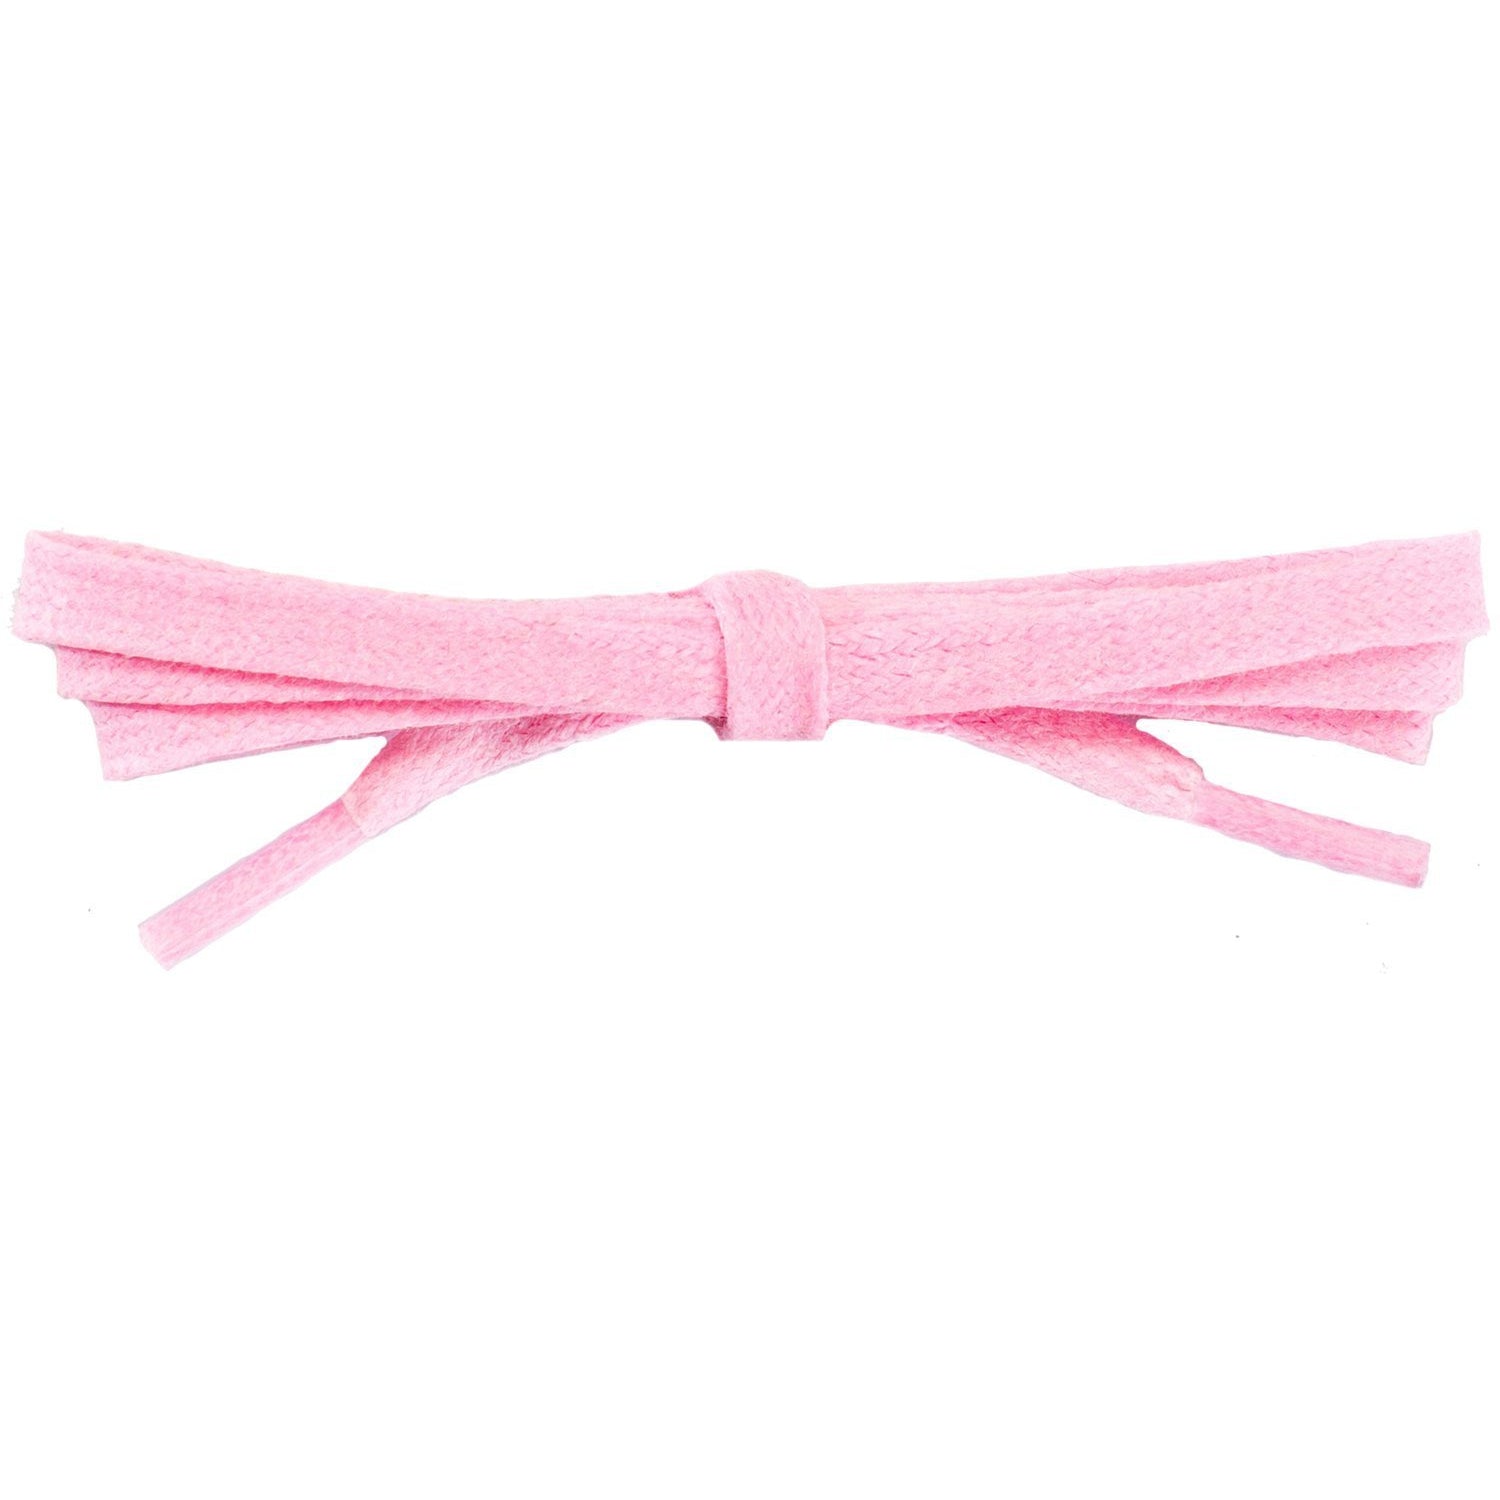 Wholesale Waxed Cotton Flat DRESS Laces 1/4'' - Pastel Pink (12 Pair Pack) Shoelaces